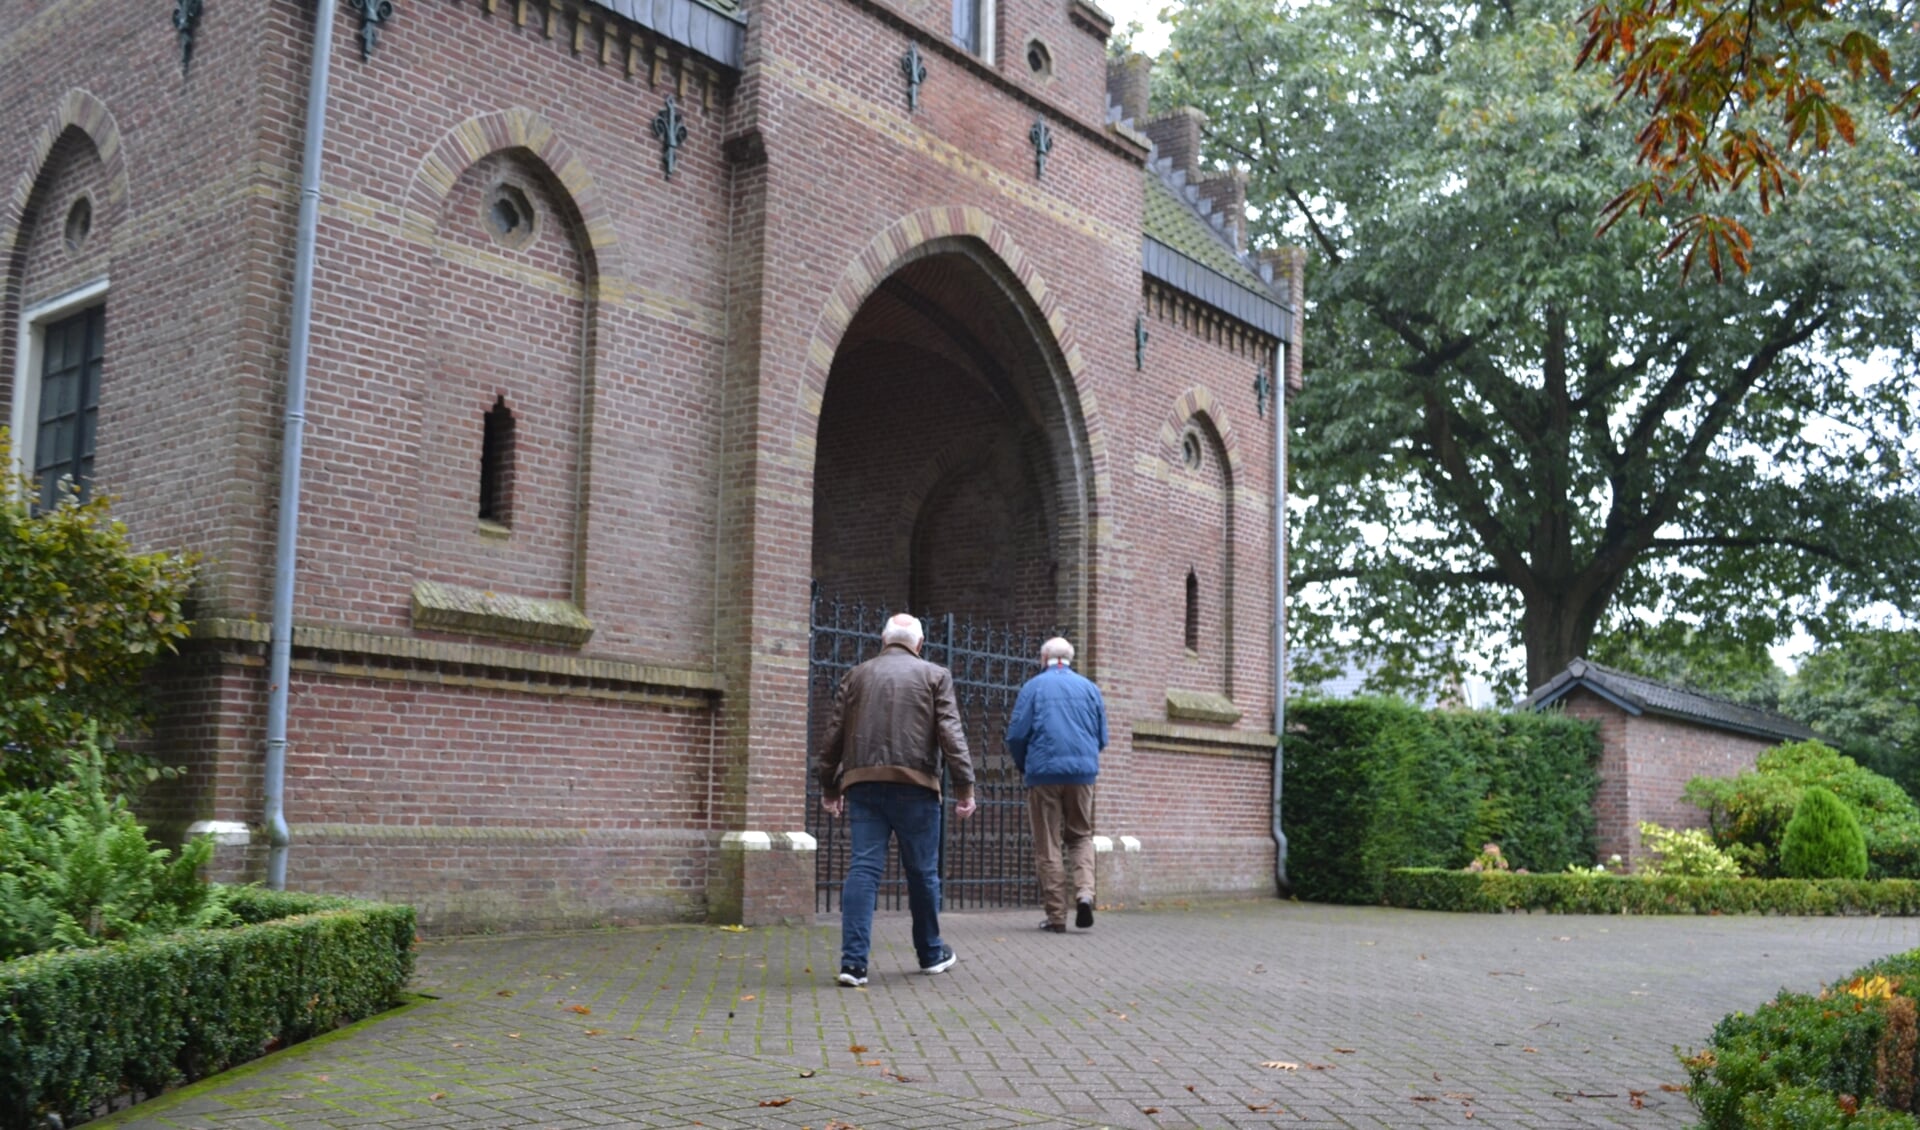 RIJSSEN-HOLTEN - In de gemeente wordt op Open Monumentendag 11 september breed uitgepakt. Ook de rk-begraafplaats in Rijssen is open. 